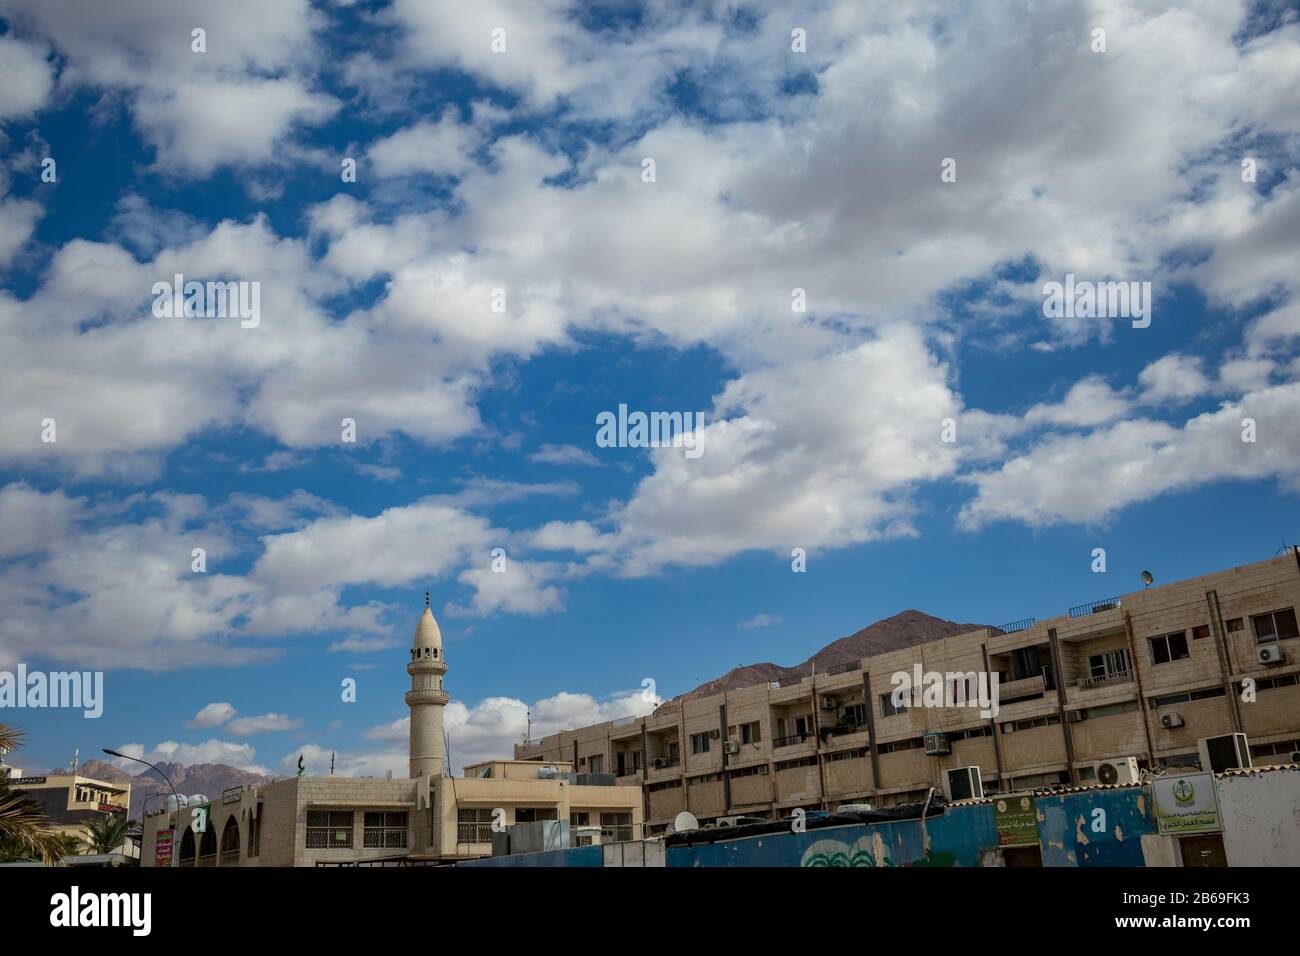 Aqaba, JORDANIE - 31 JANVIER 2020: De beaux nuages blancs d'hiver puffy se déplaçant dans le ciel au-dessus de la célèbre ville. golfe de la Mer Rouge, Royaume hachémite de Jordanie. Vue sur la rue avec mosquée et bâtiments résidentiels Banque D'Images